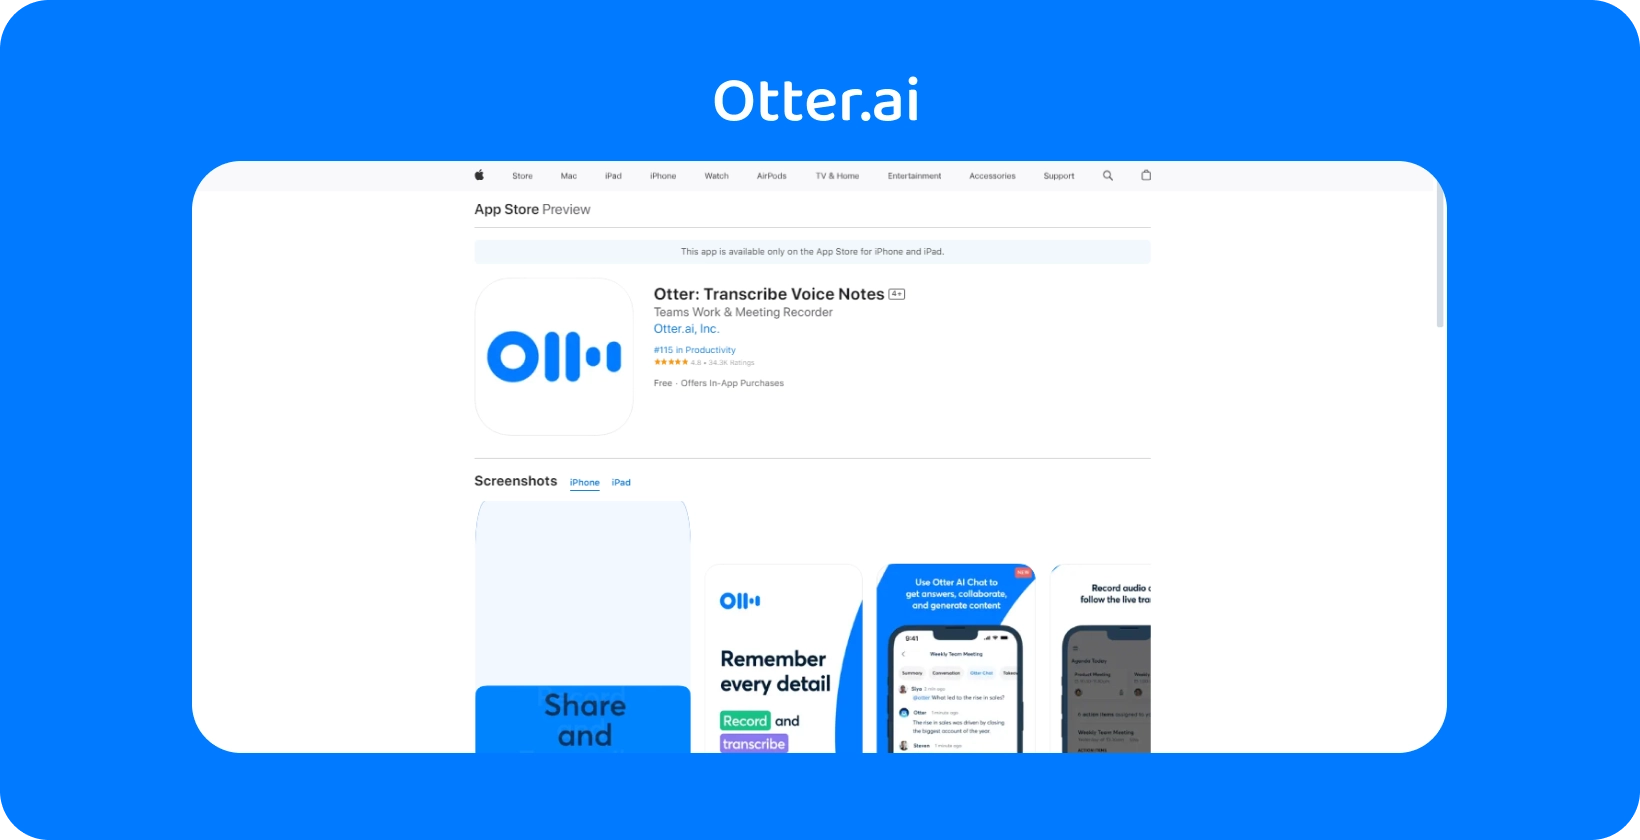 Otter.ai App Store aperçu présentant les fonctionnalités de transcription et de note vocale de l’application sur iPhone.